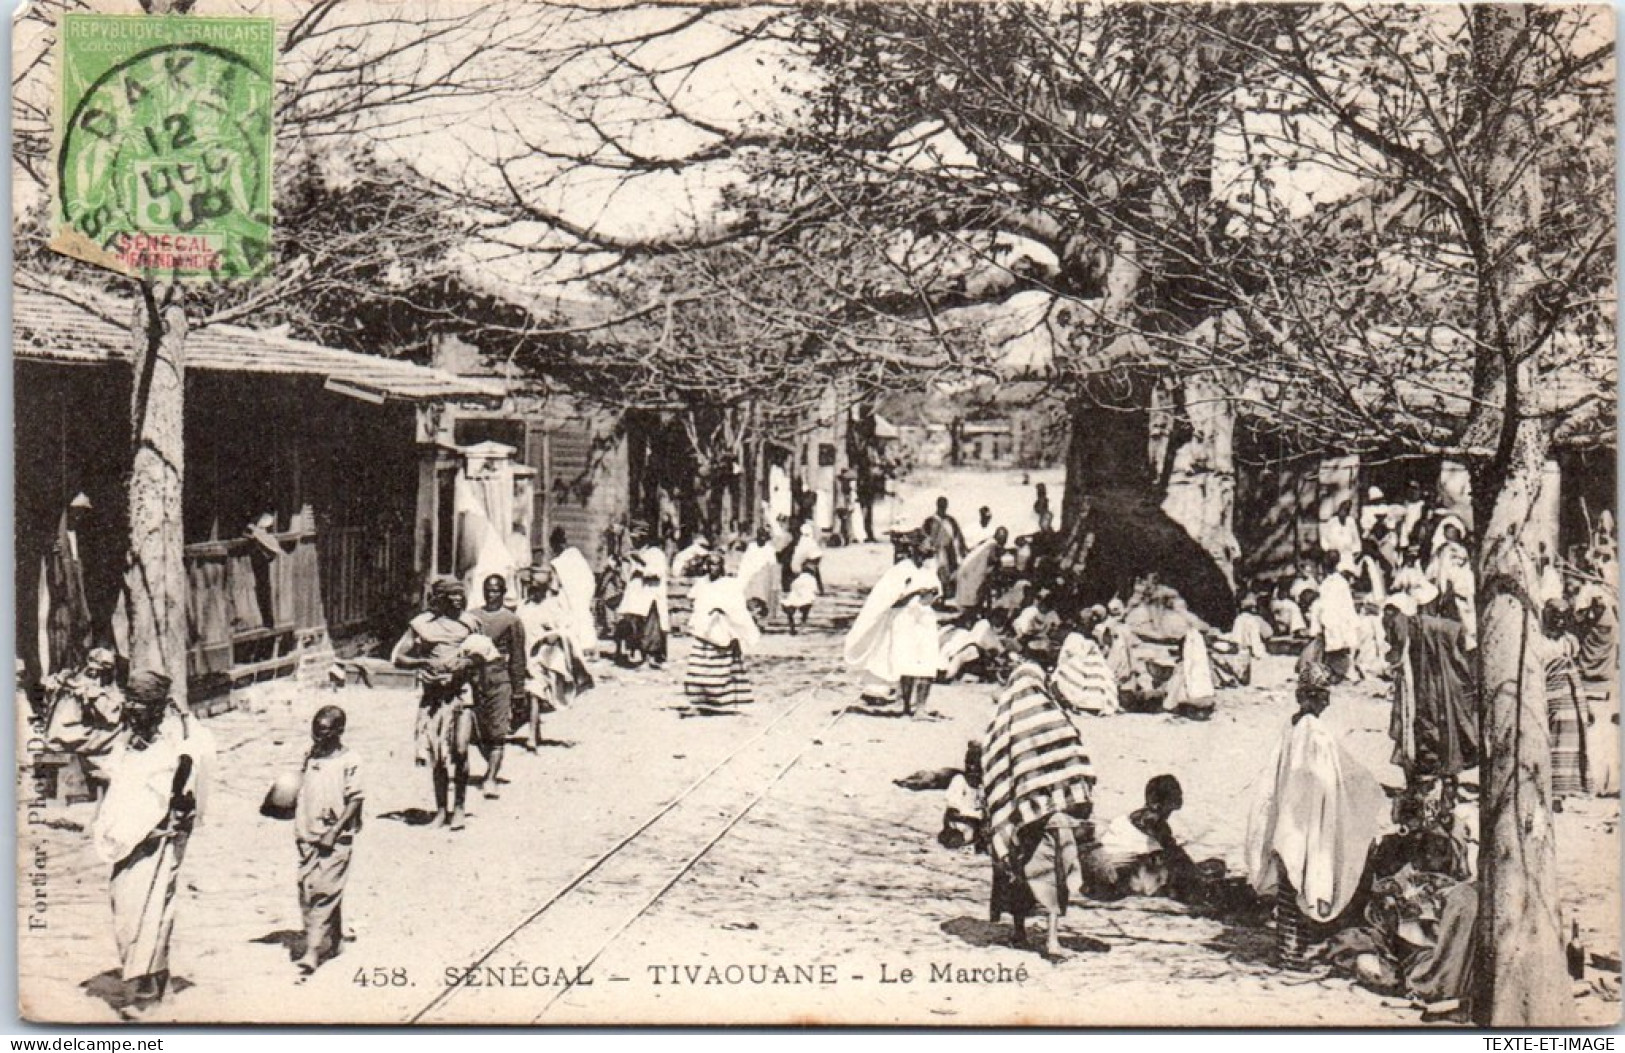 SENEGAL - TIVAOUANE - Le Marche  - Sénégal